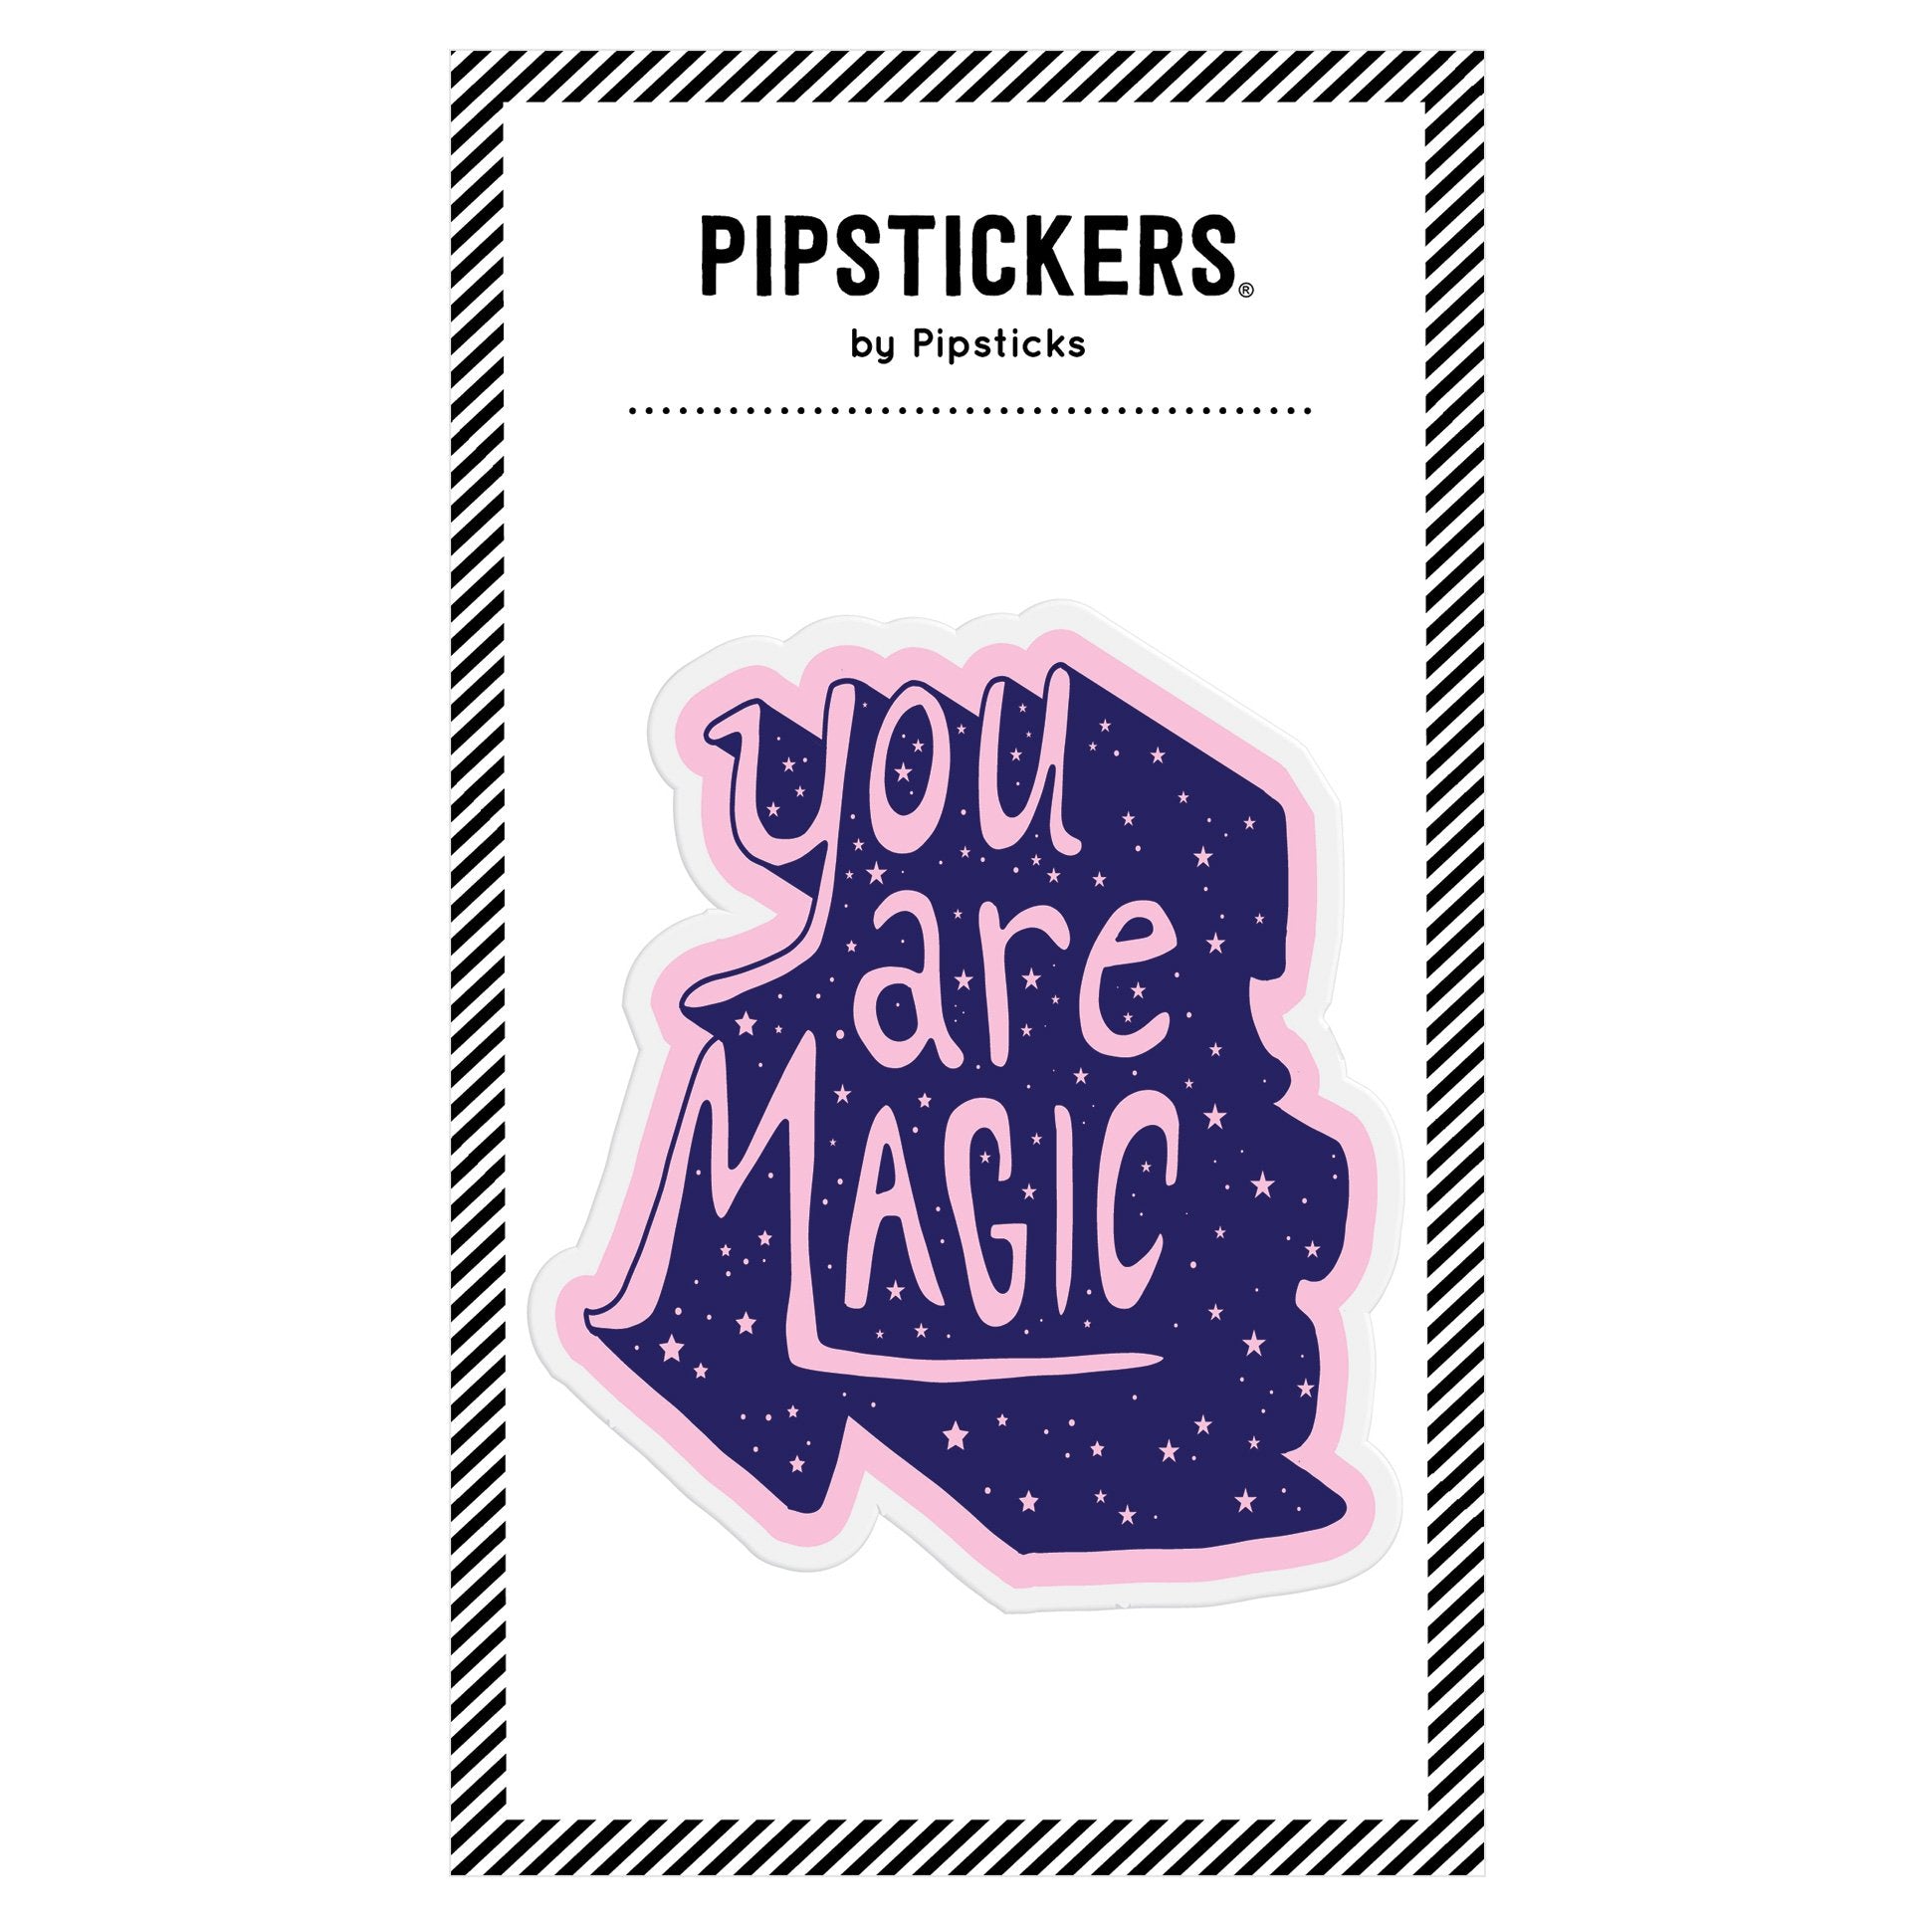 Sticker Magic book 